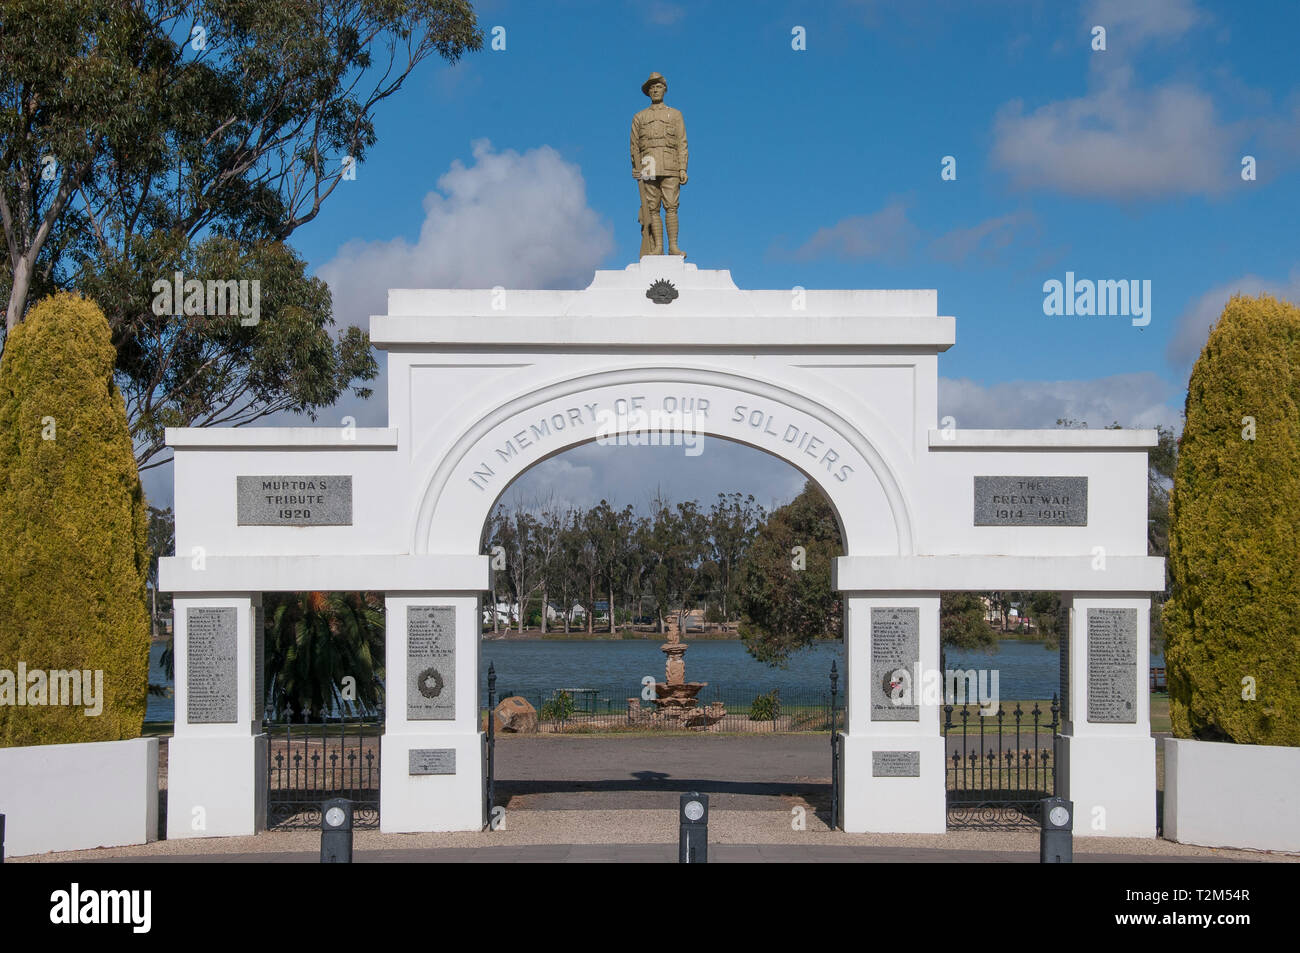 War Memorial Park en Wimmera Murtoa, región, Victoria, Australia. La imponente entrada al parque desmiente la disminución de la población de la ciudad actual. Foto de stock